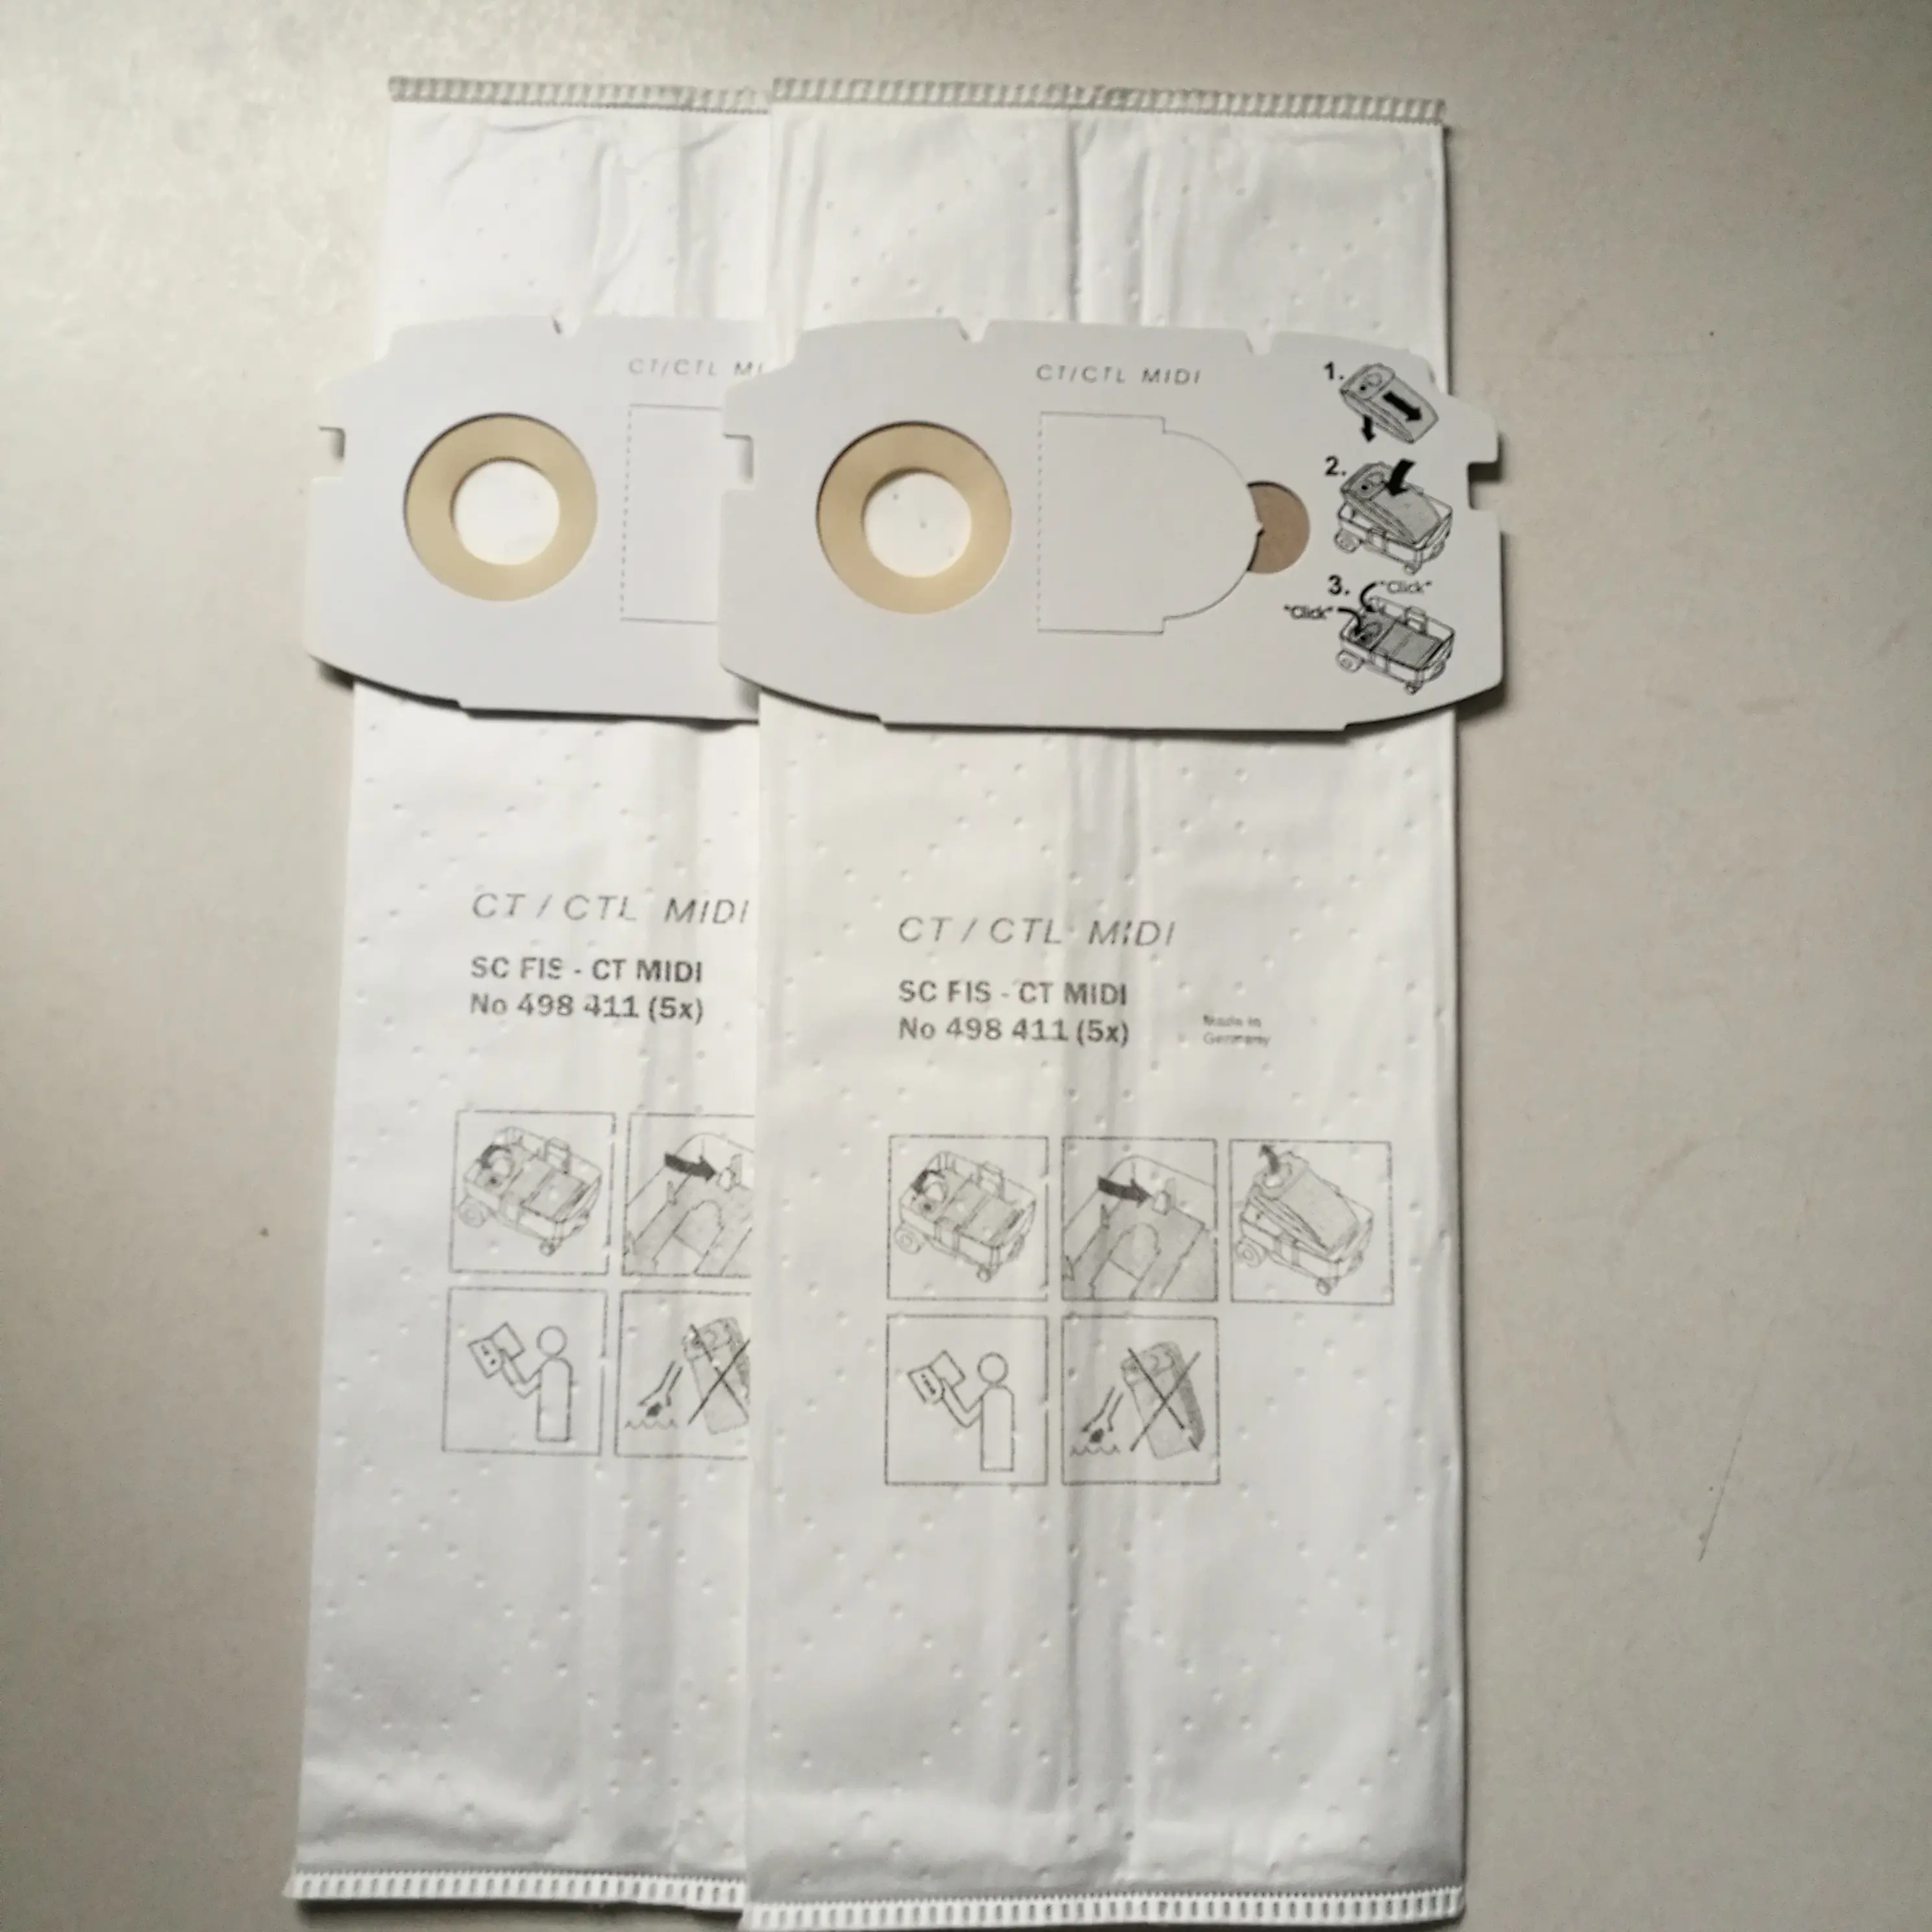 Sacchetto per la polvere in tessuto non tessuto di alta qualità Midi Ct/ ctl/ 22 sacchetto filtro Hepa per aspirapolvere in microfibra per Festool